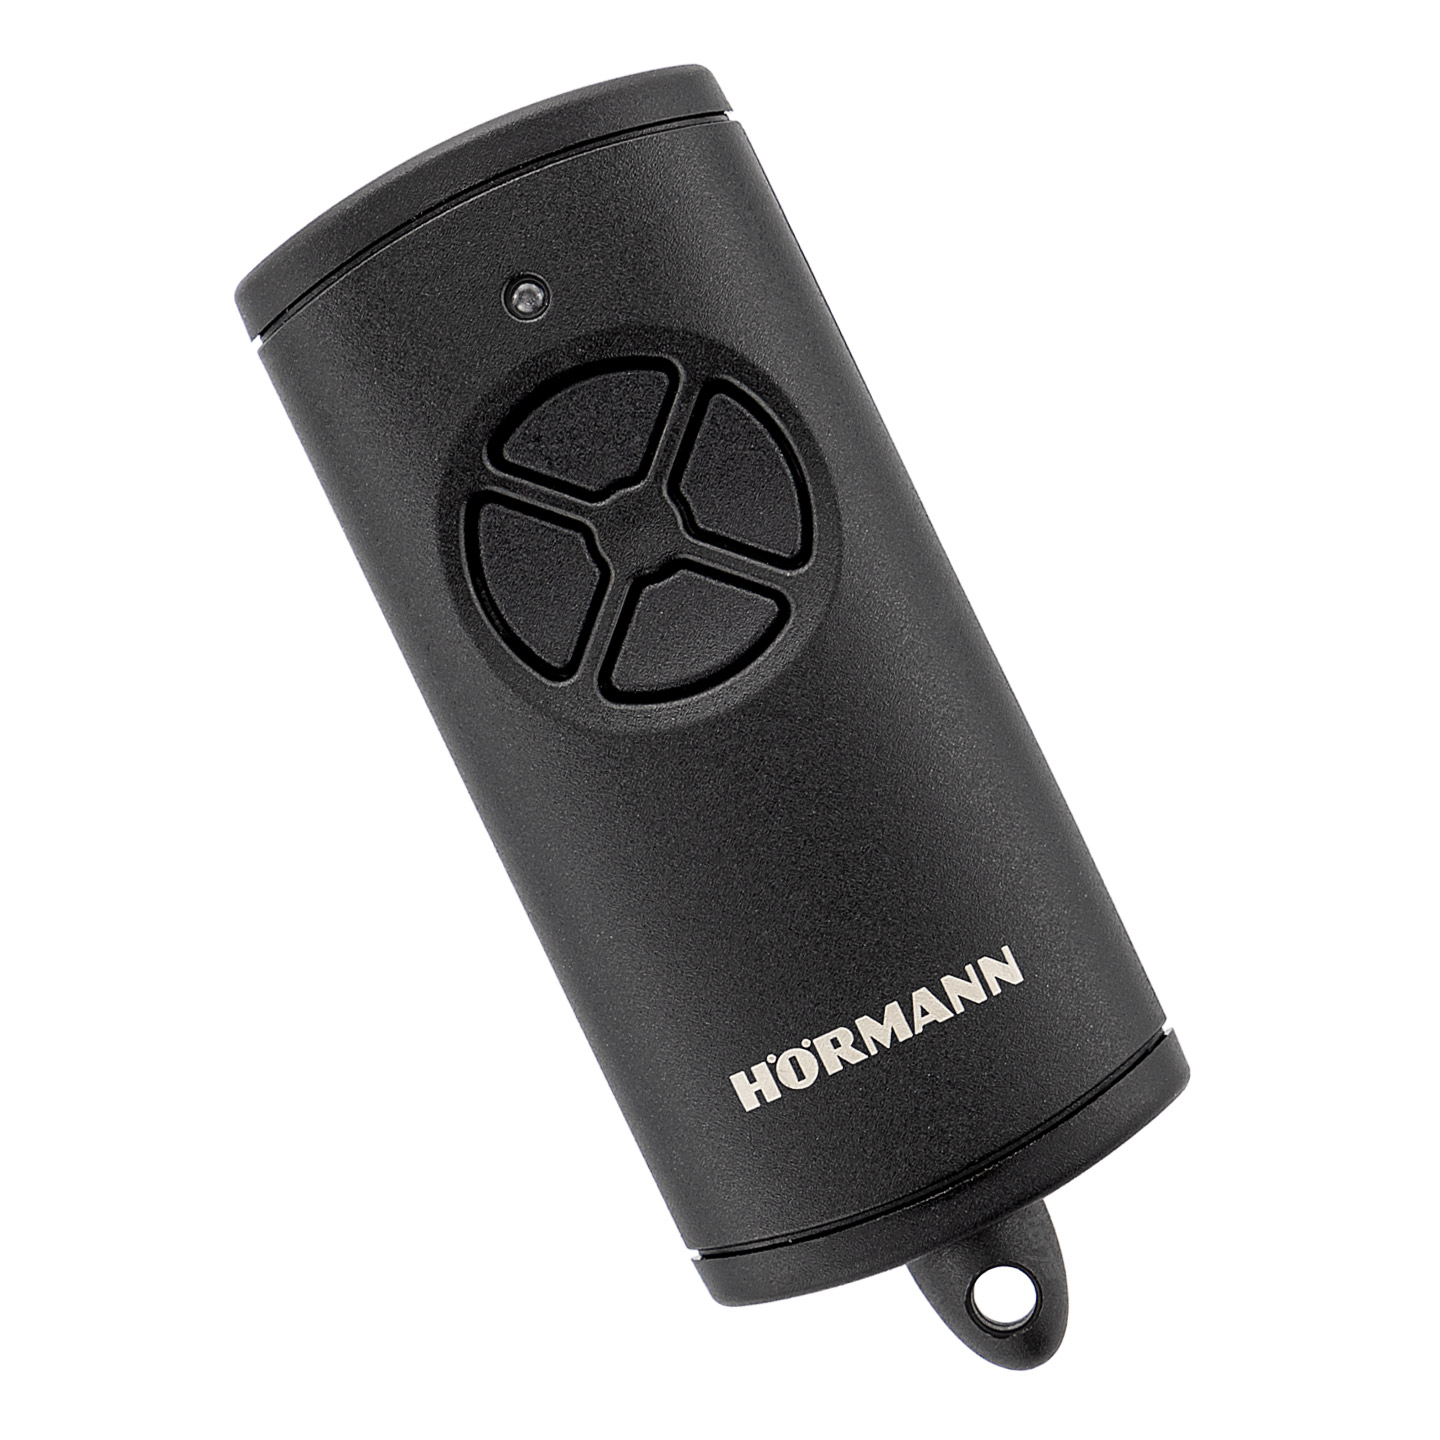 Hörmann Handsender HSE 4 BS (Frequenz 868 MHz, Hochglanz weiß,  Garagentorantrieb mit Chrom-Kappen, Batterien, Maße 28x70x14 mm, inkl.  Schlüsselring) 4511565 : : Baumarkt